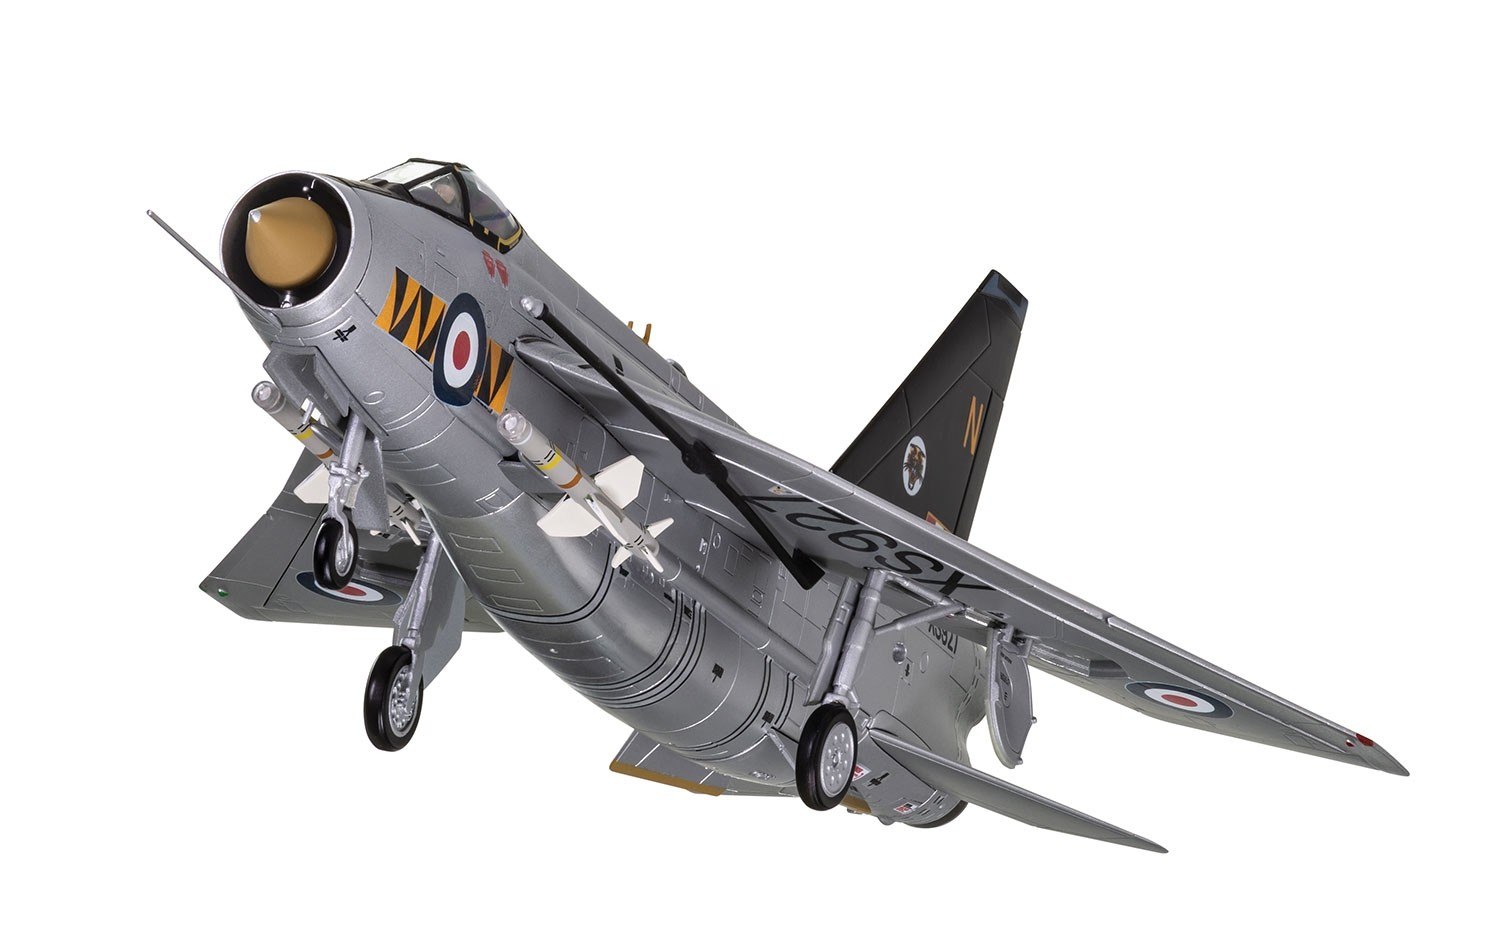 ライトニングF Mk.6 イギリス空軍 第74飛行隊 60年代 ルーカース基地 XS927/N 1/48 ※新金型 [AA28402]